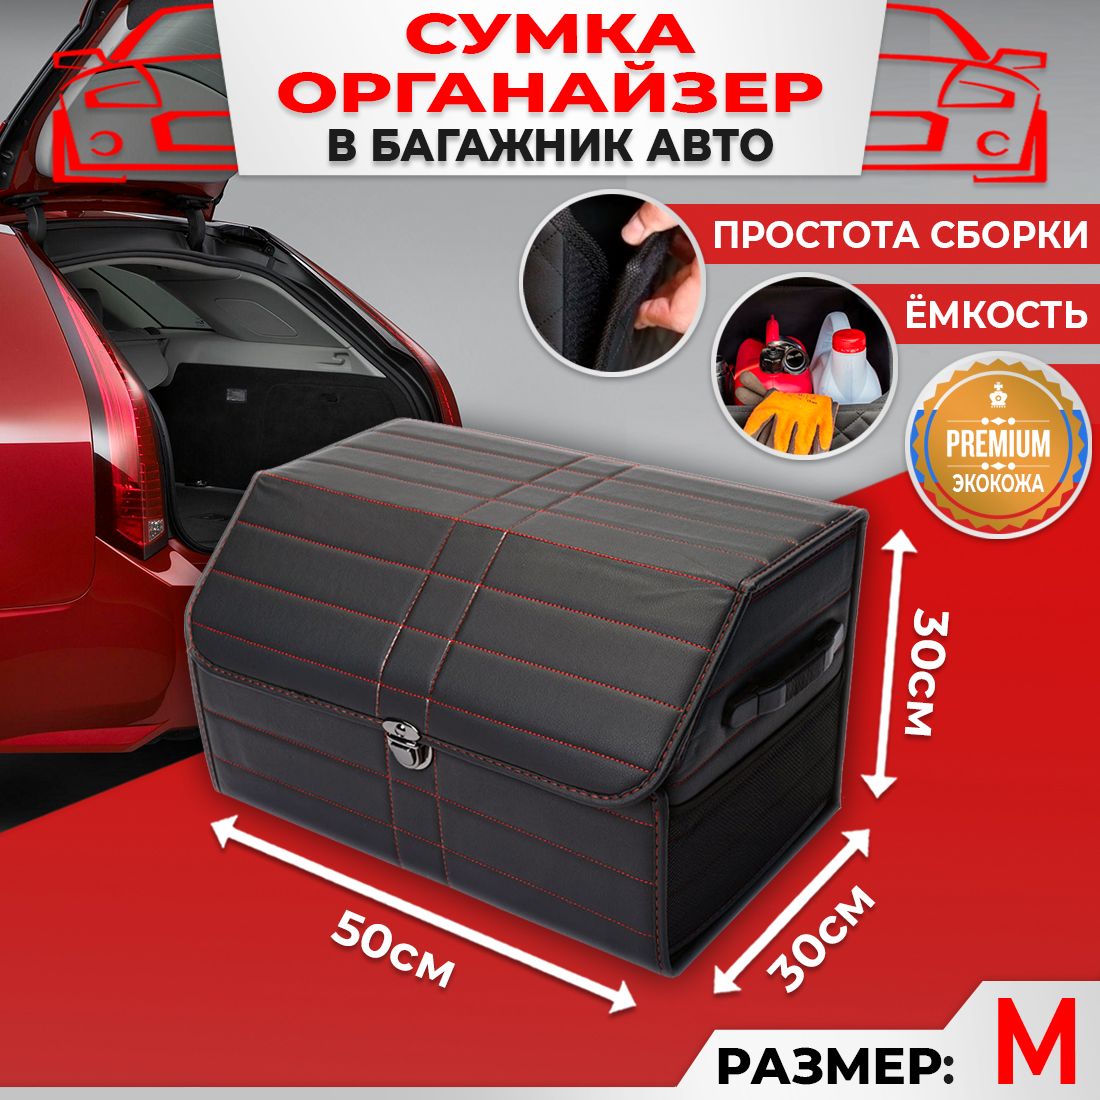 Сумка Саквояж Органайзер в багажник автомобиля размер 50х30х30см цвет черный полоса красная